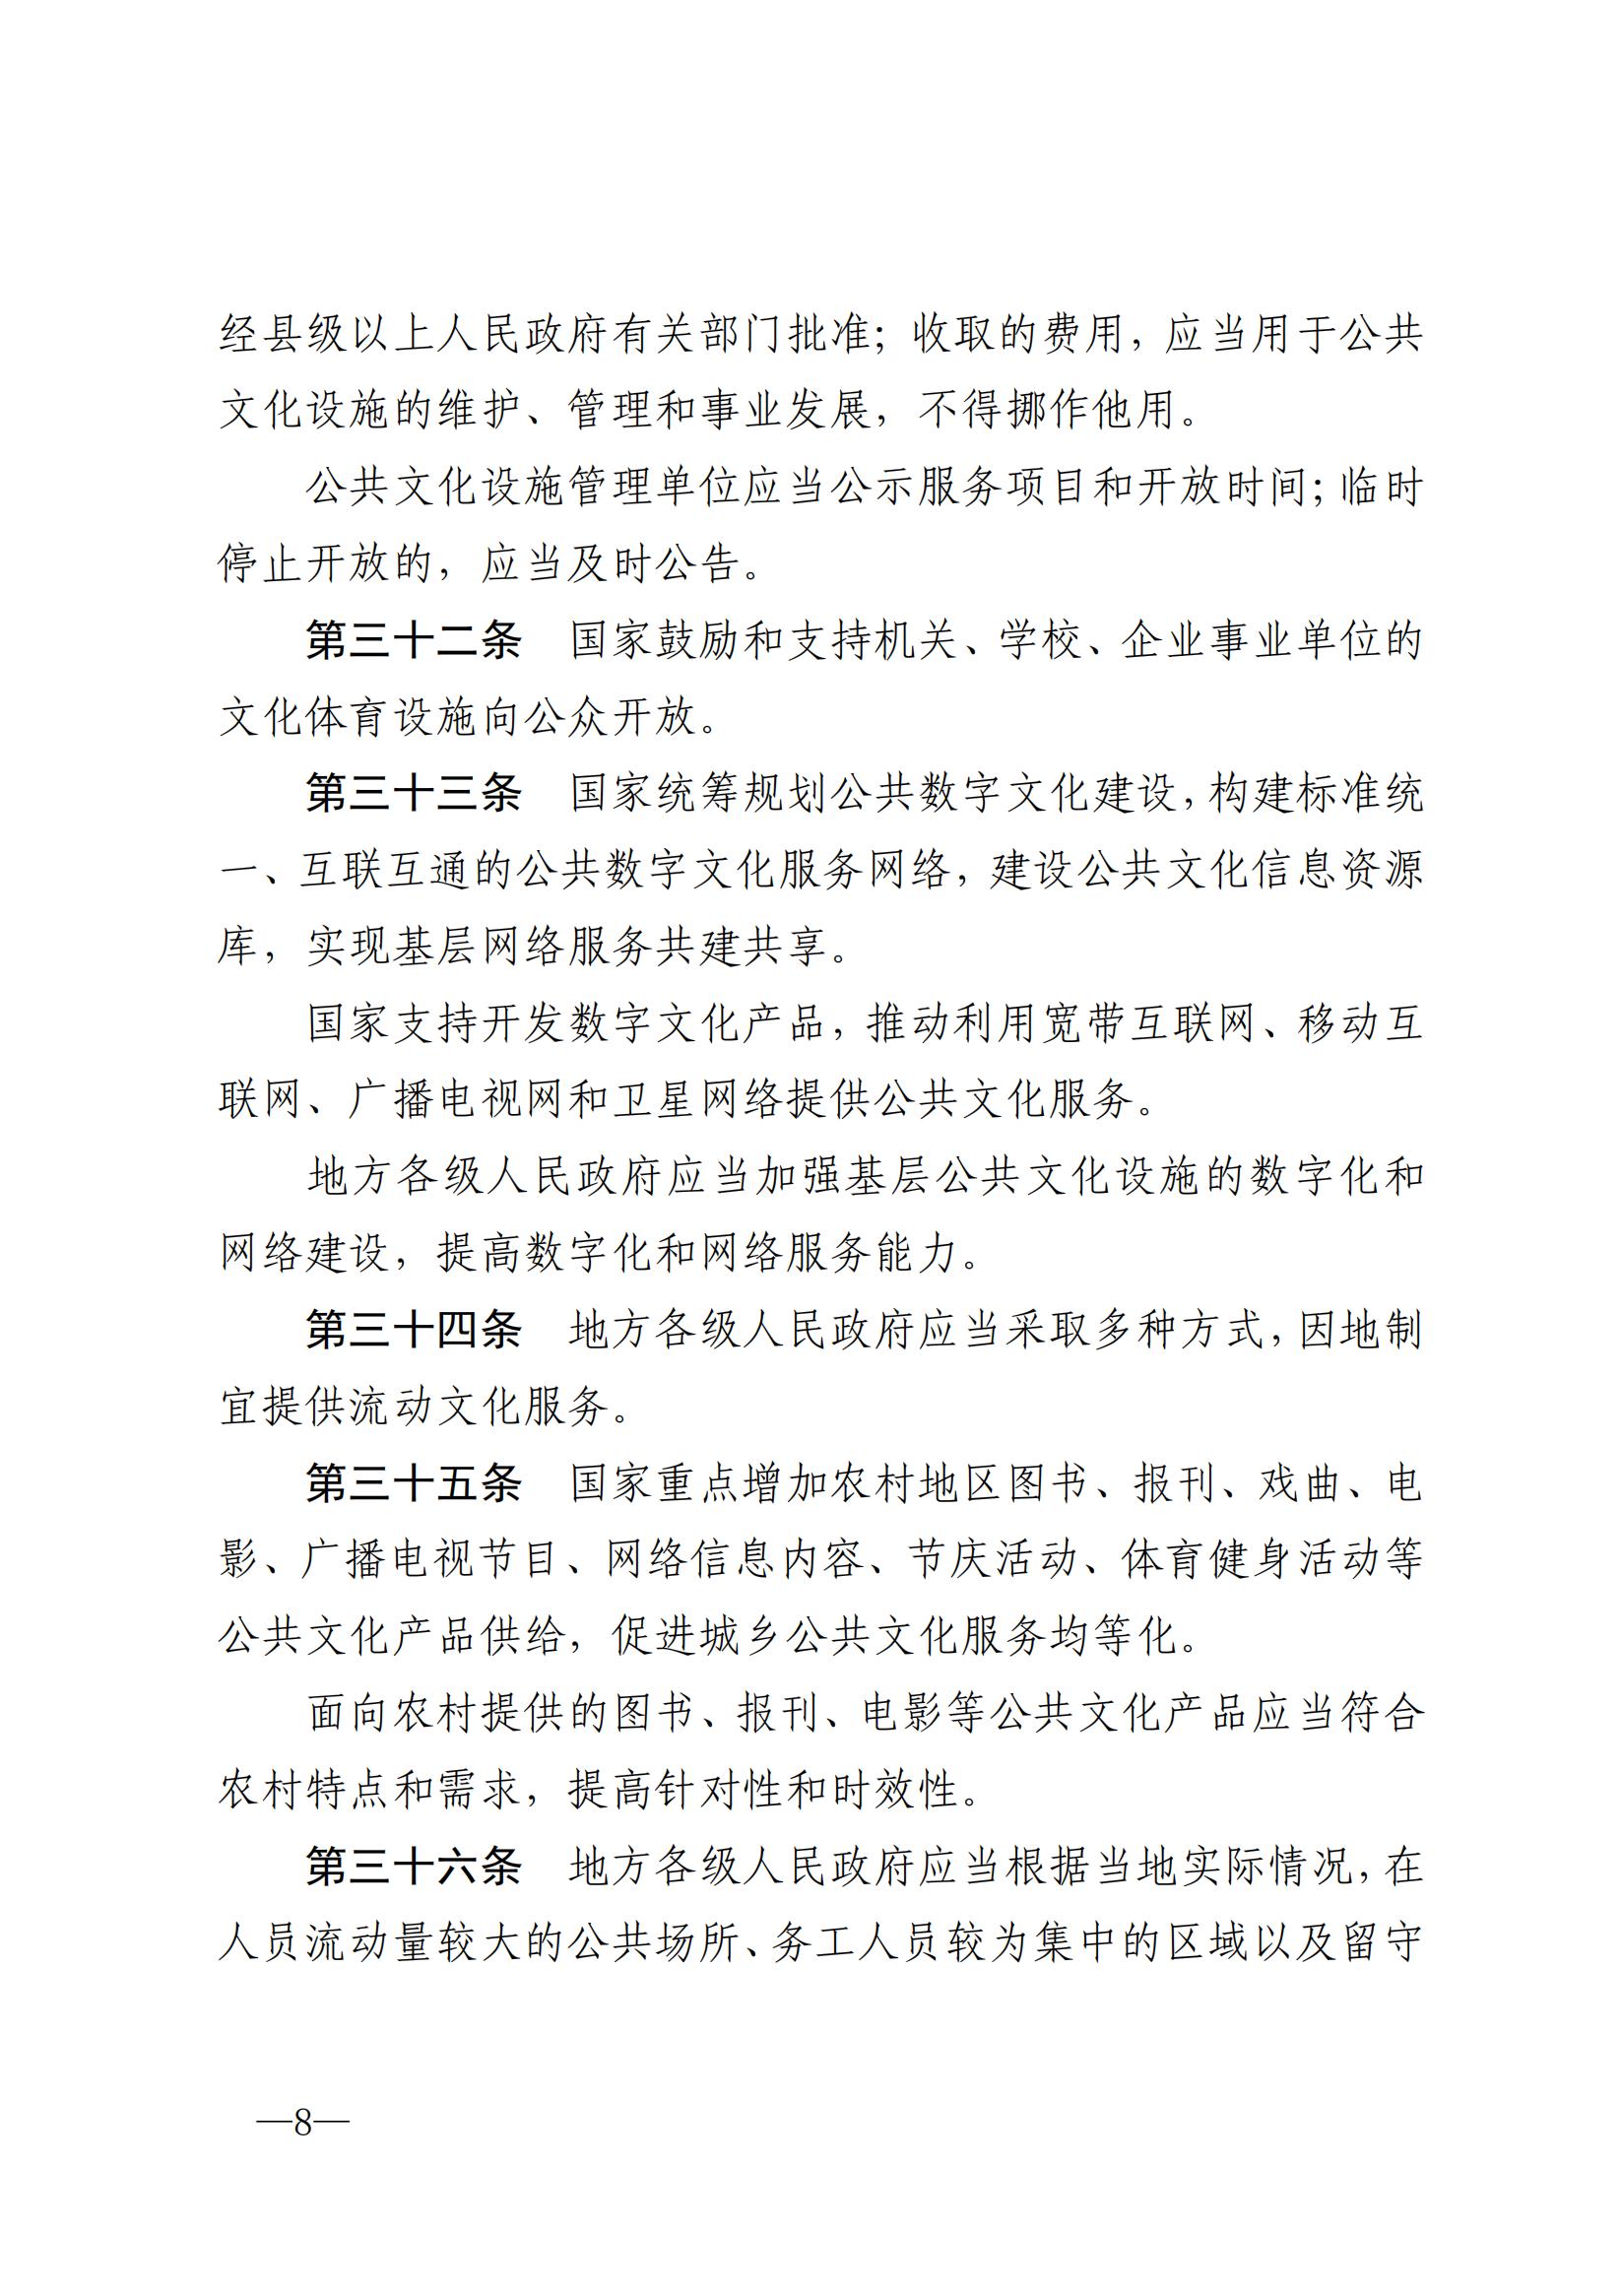 中华人民共和国公共文化服务保障法_07.jpg